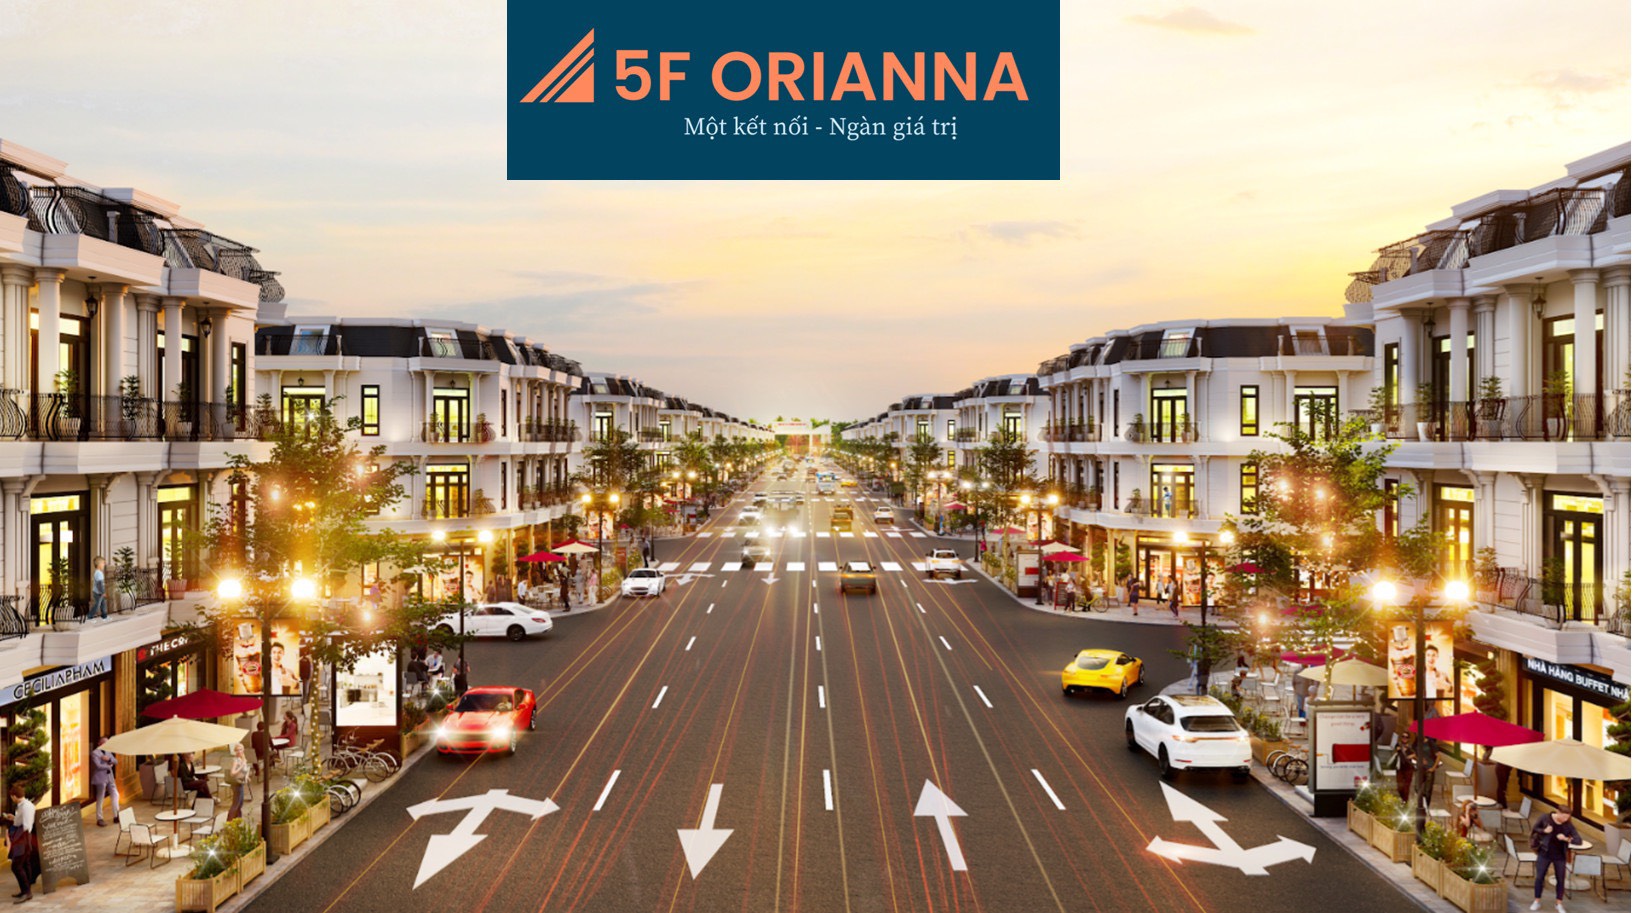 5F Orianna luôn là lựa chọn của rất nhiều giới nhà đầu tư lâu năm